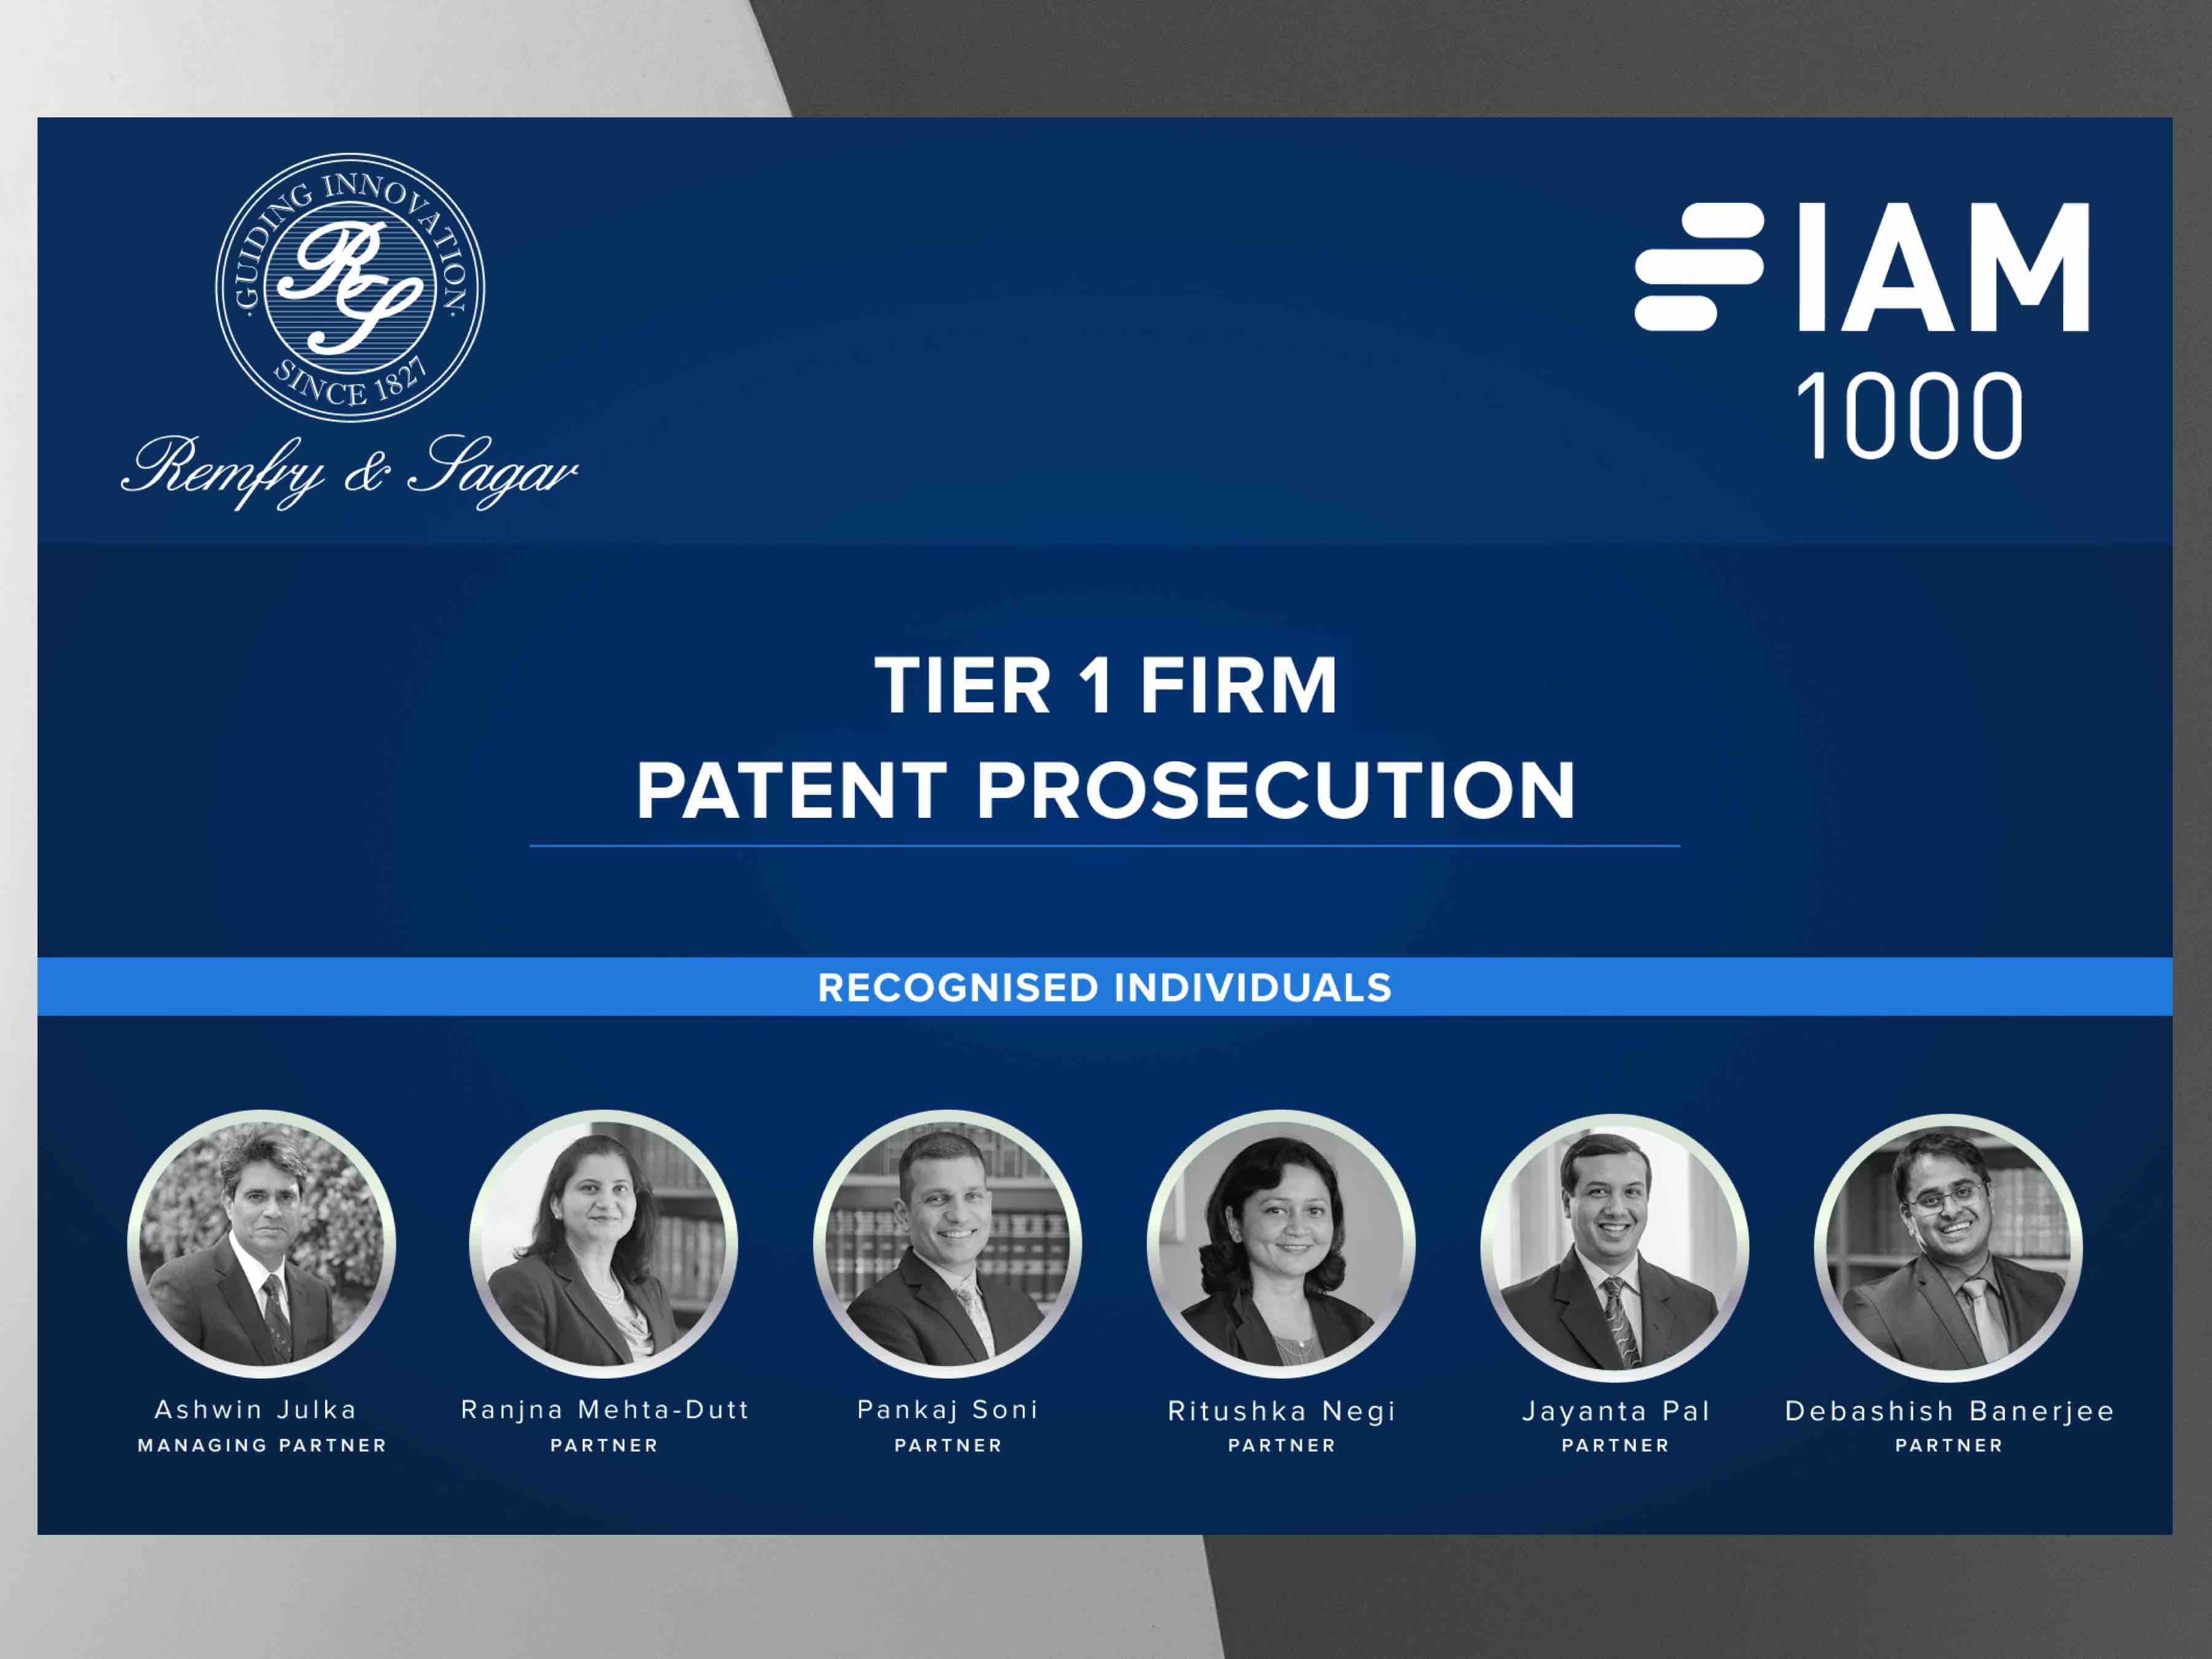 IAM Patent 1000 2023